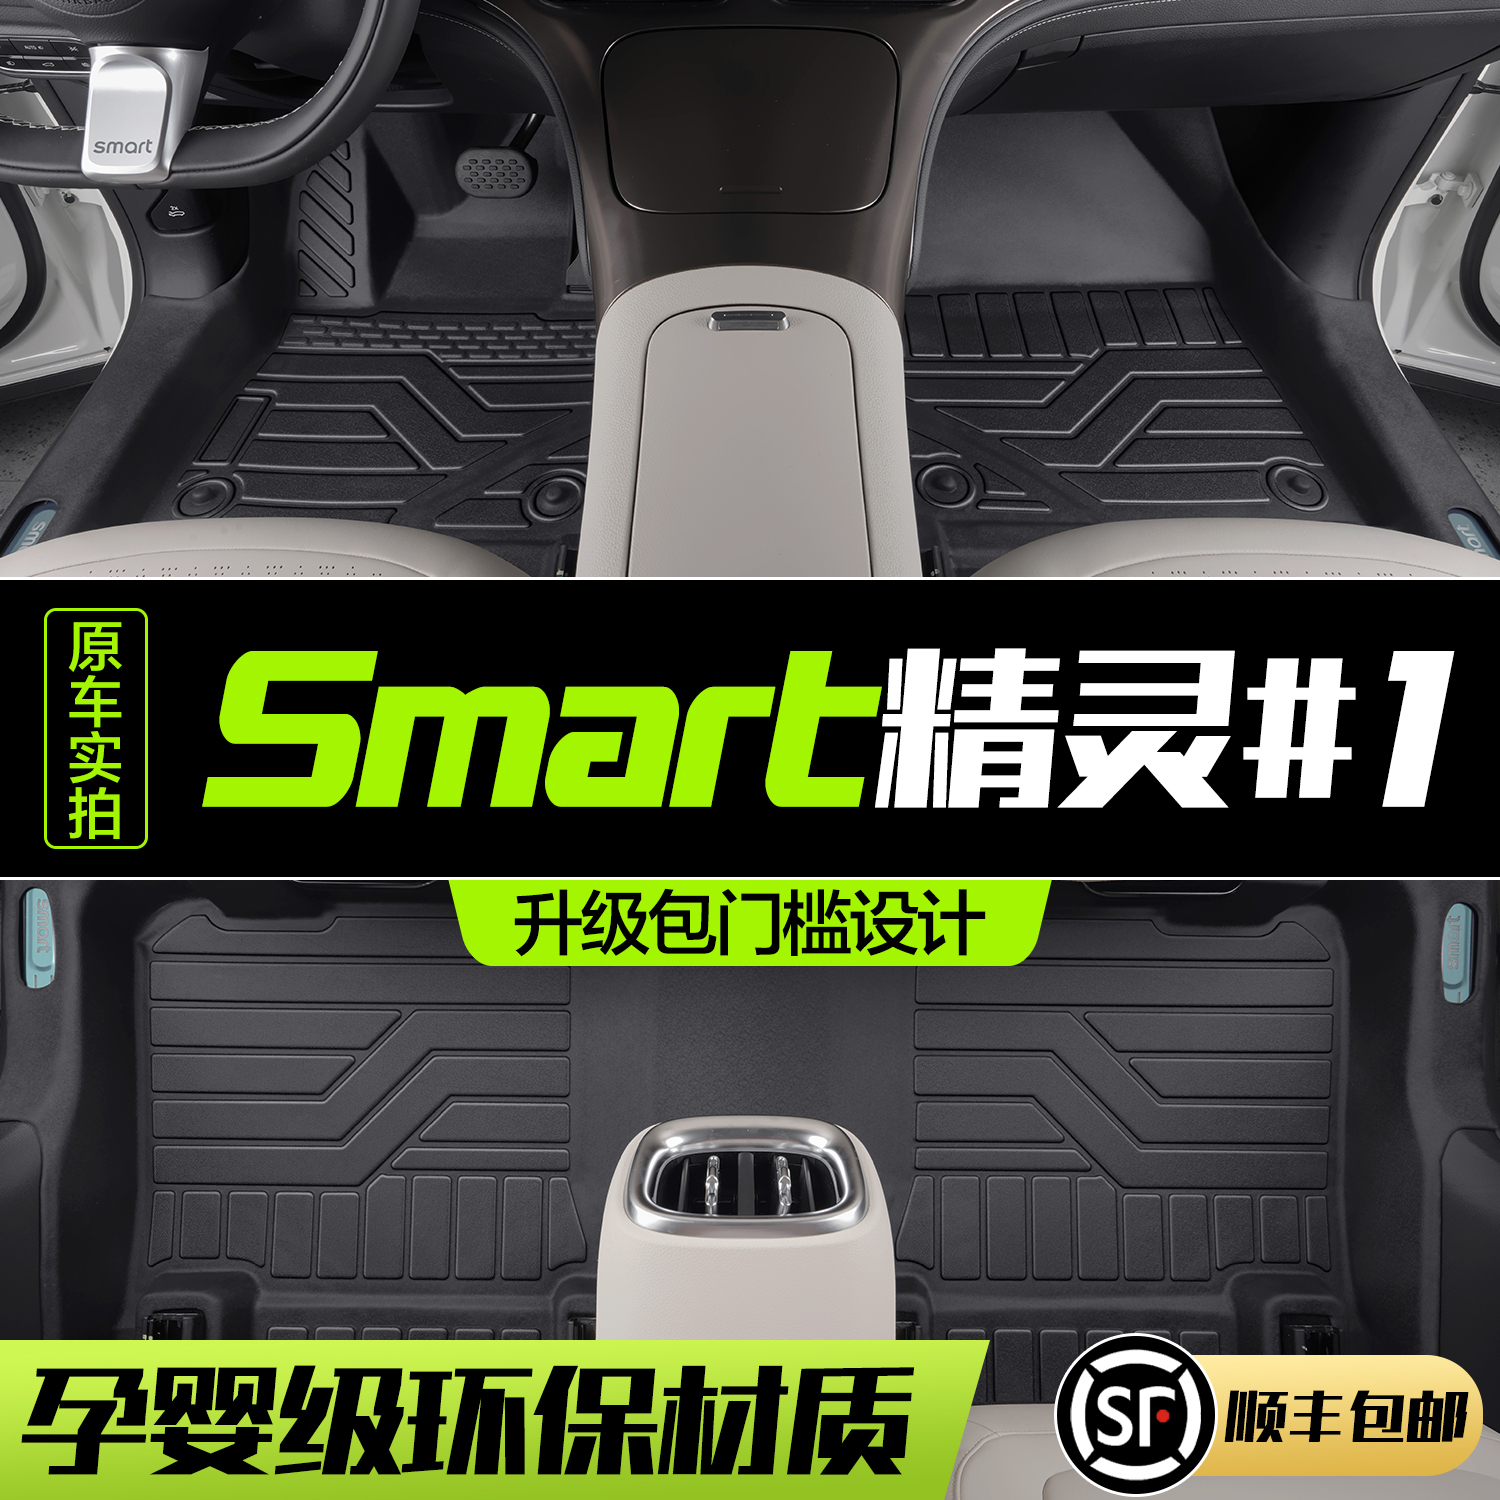 smart车改装